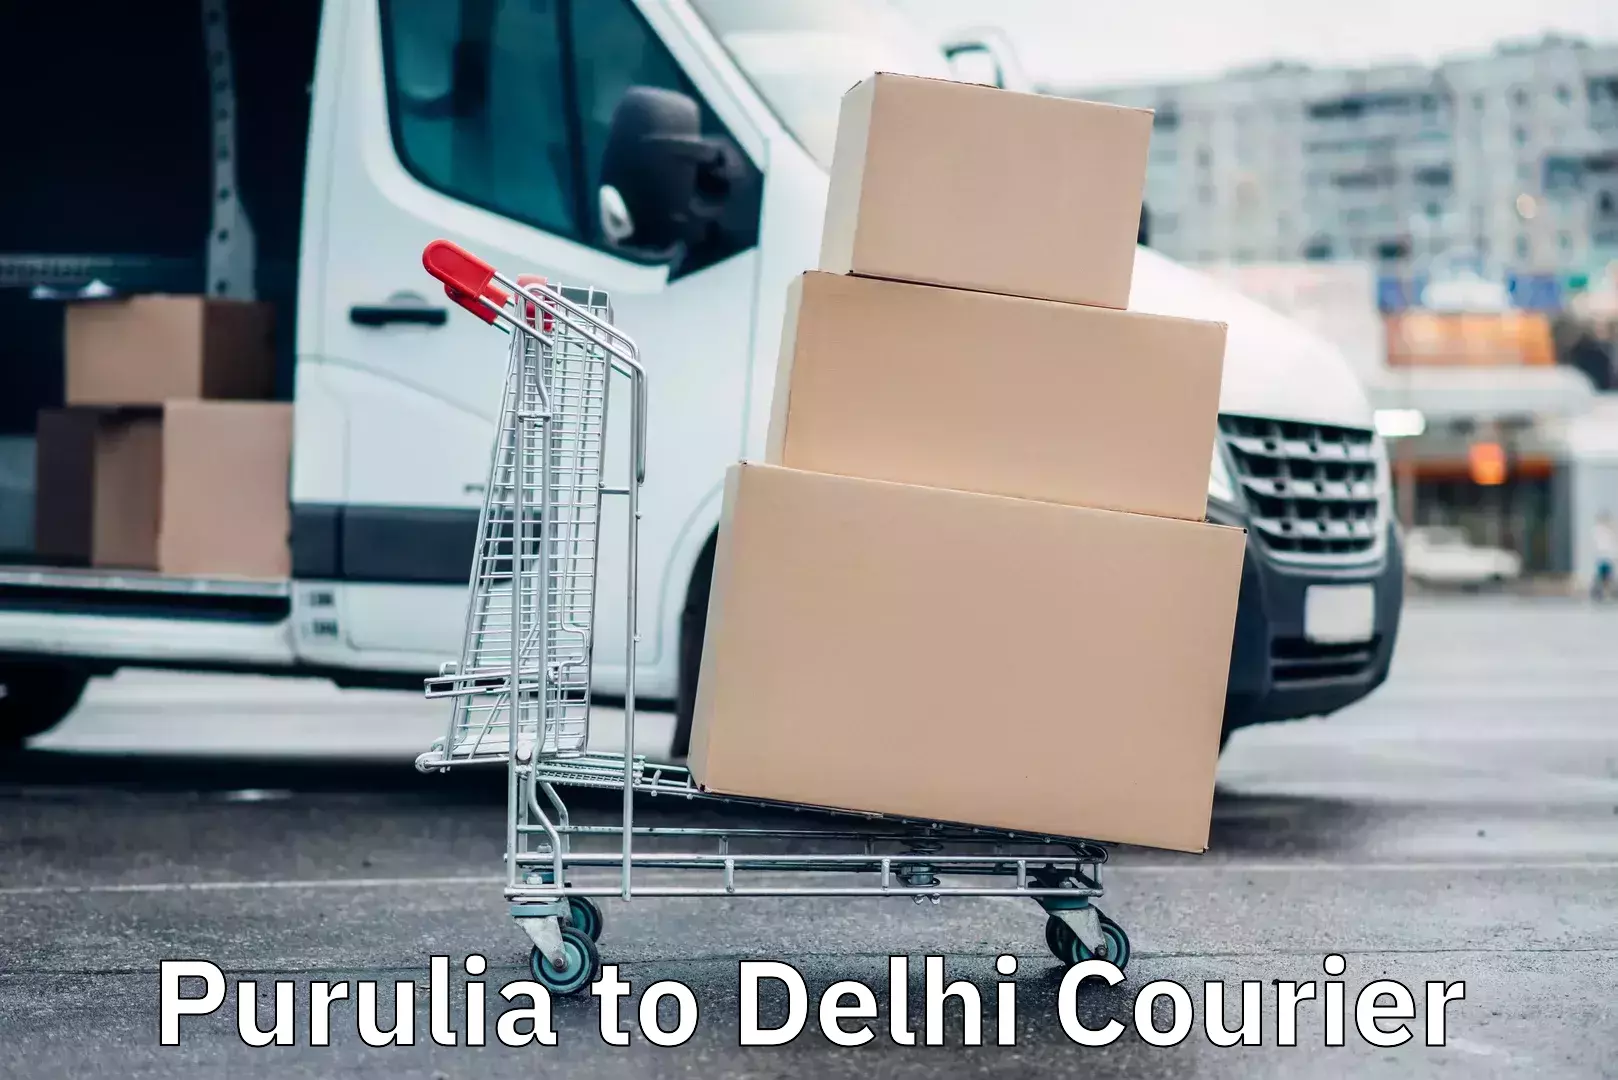 Nationwide courier service Purulia to Delhi